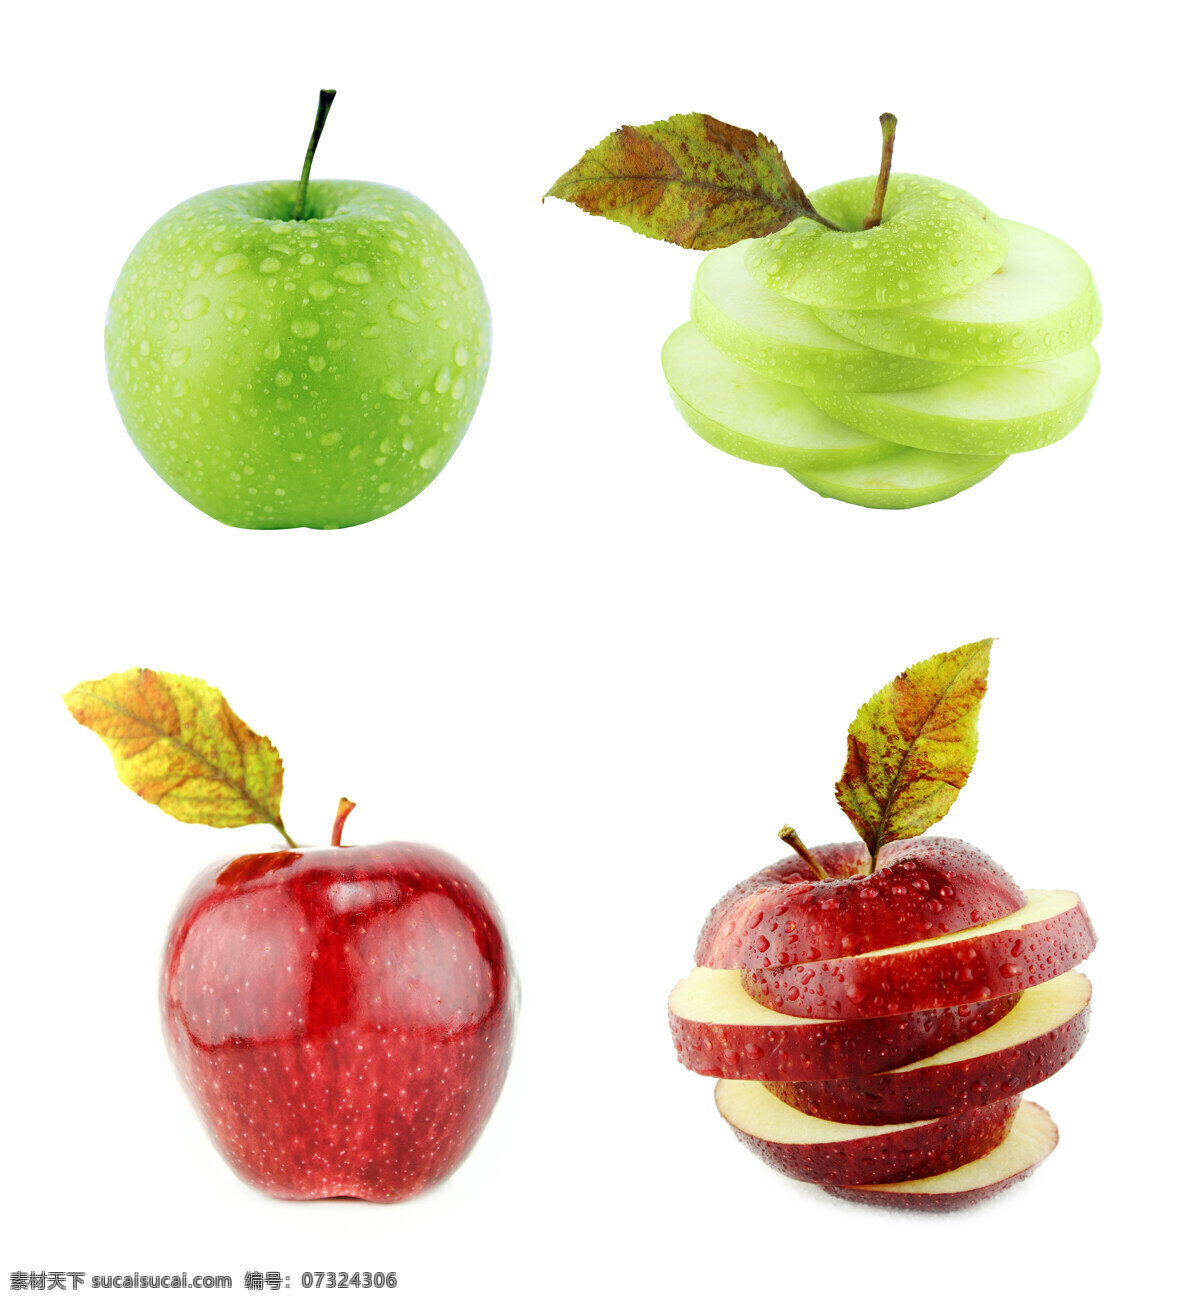 红苹果 青苹果 创意水果 切开的苹果 苹果 新鲜苹果 新鲜水果 水果摄影 水果蔬菜 餐饮美食 白色